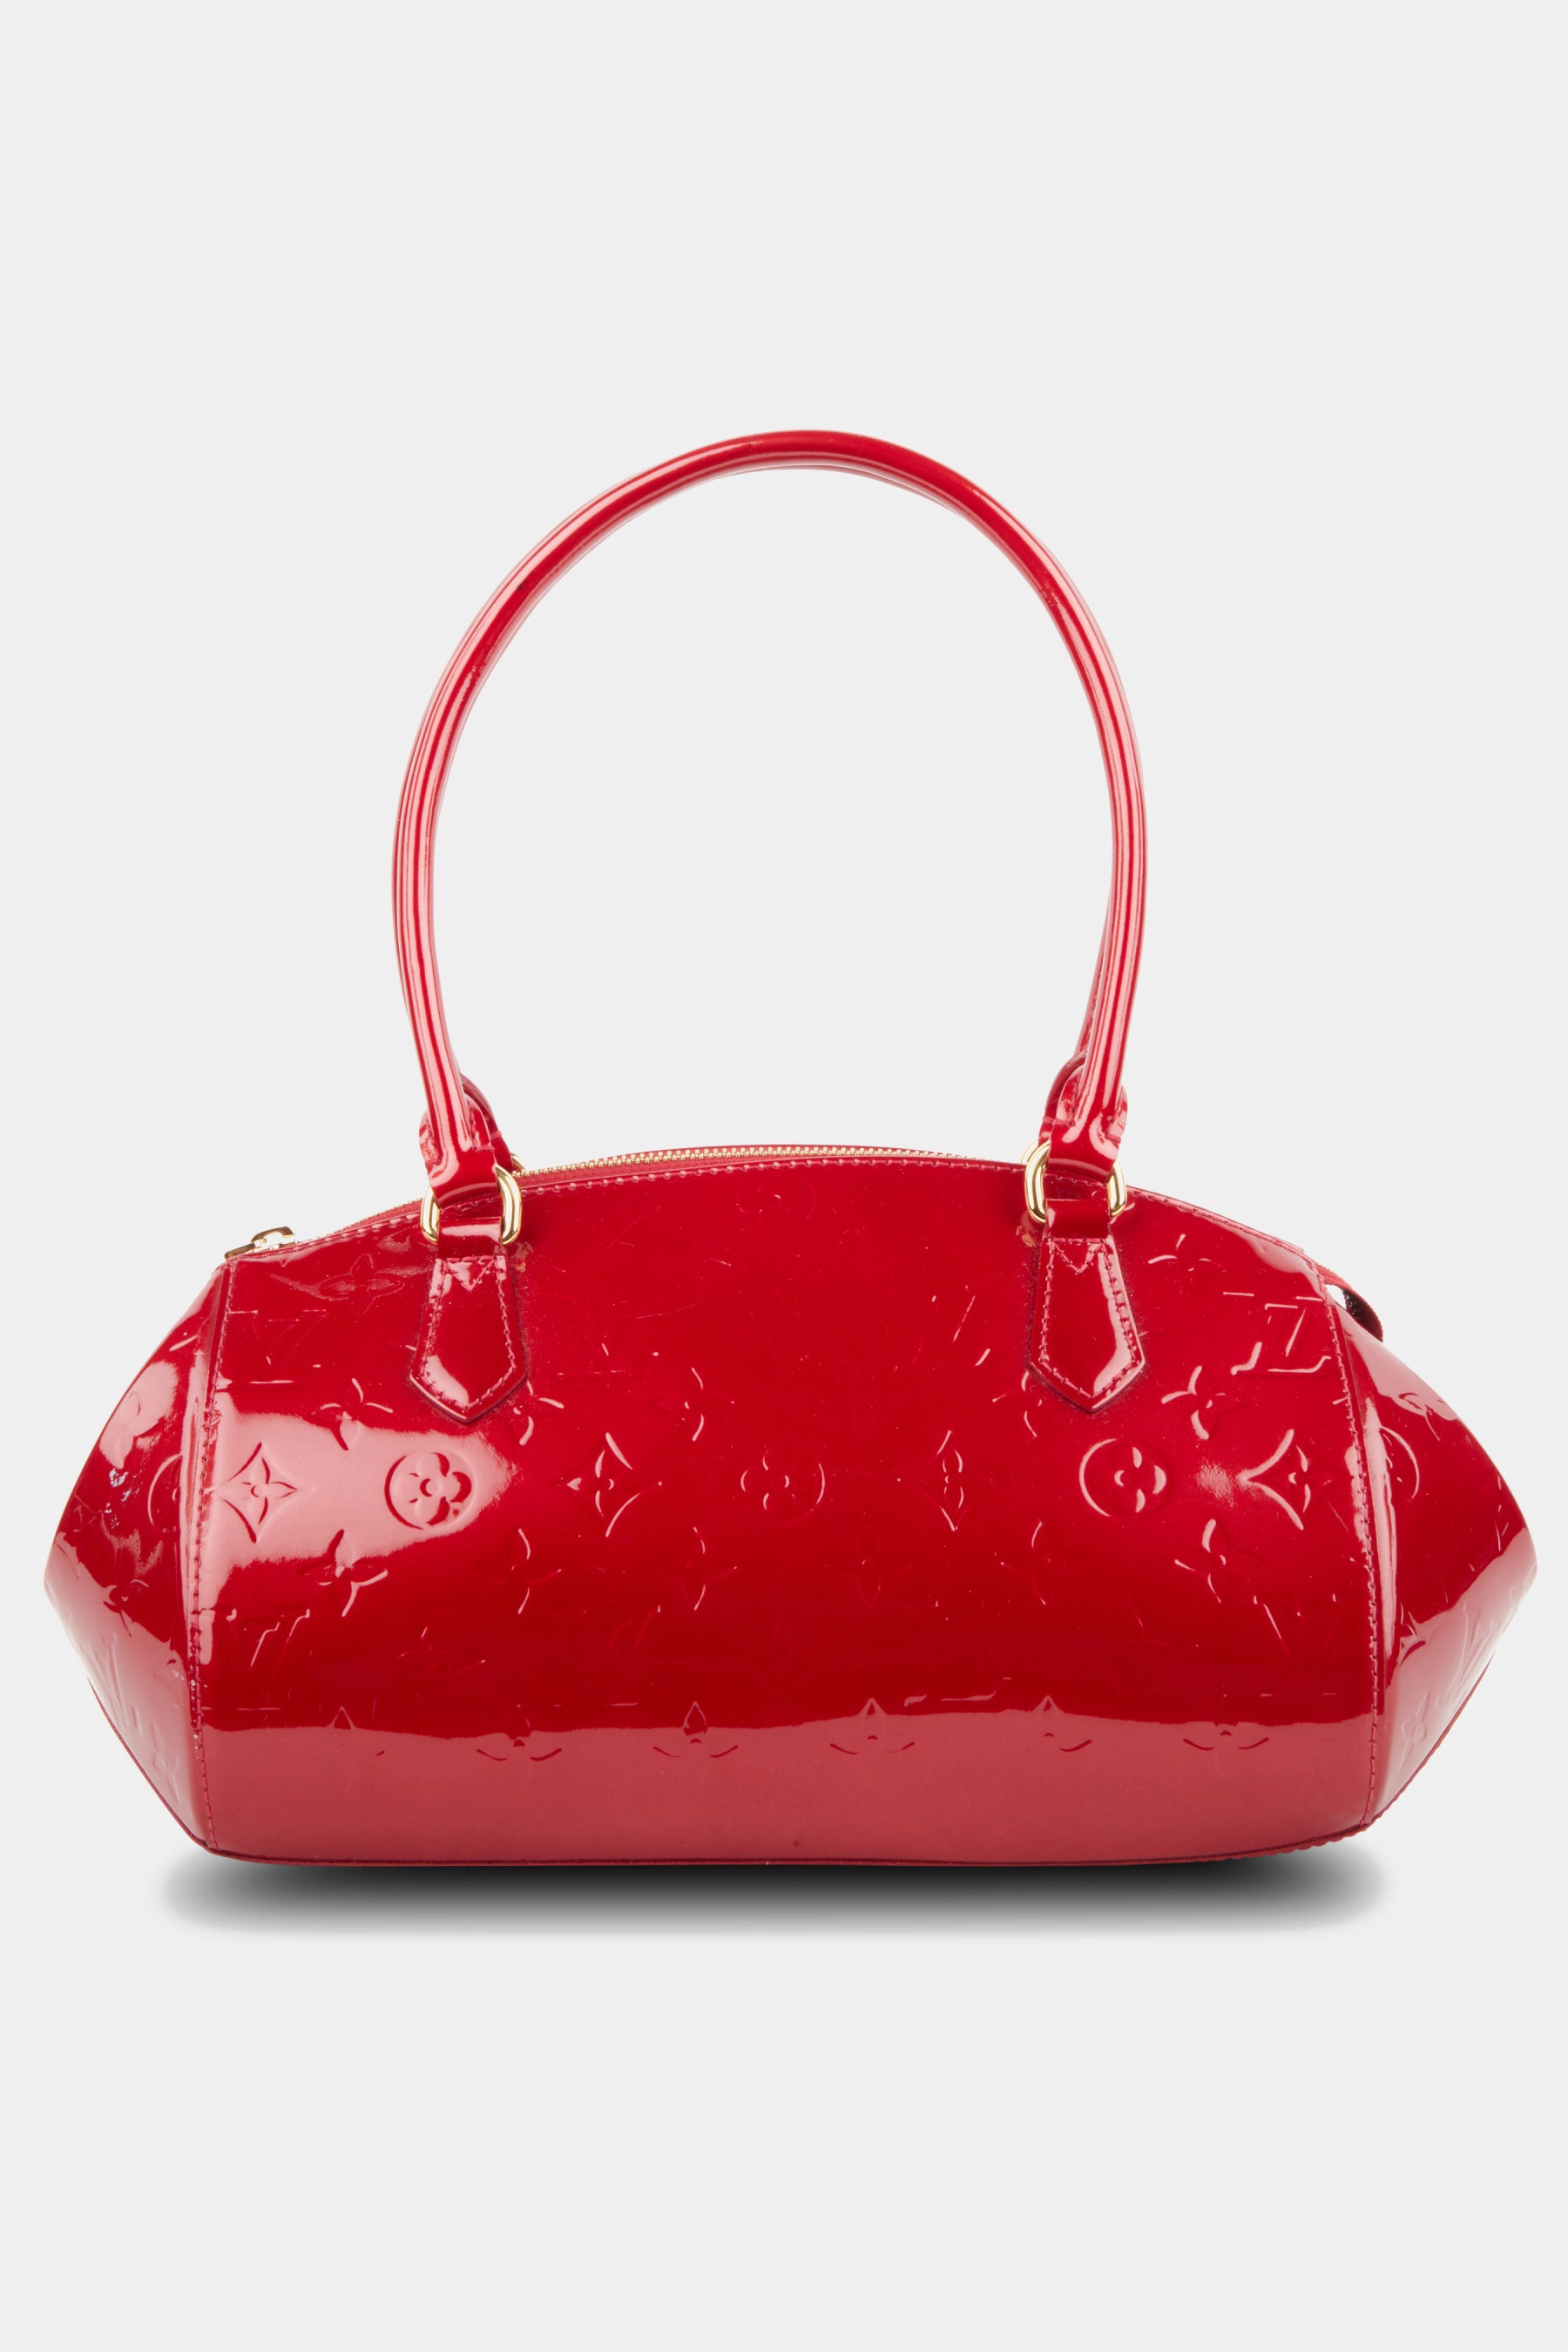 Louis Vuitton Monogram Vernis Leather Sherwood Bag